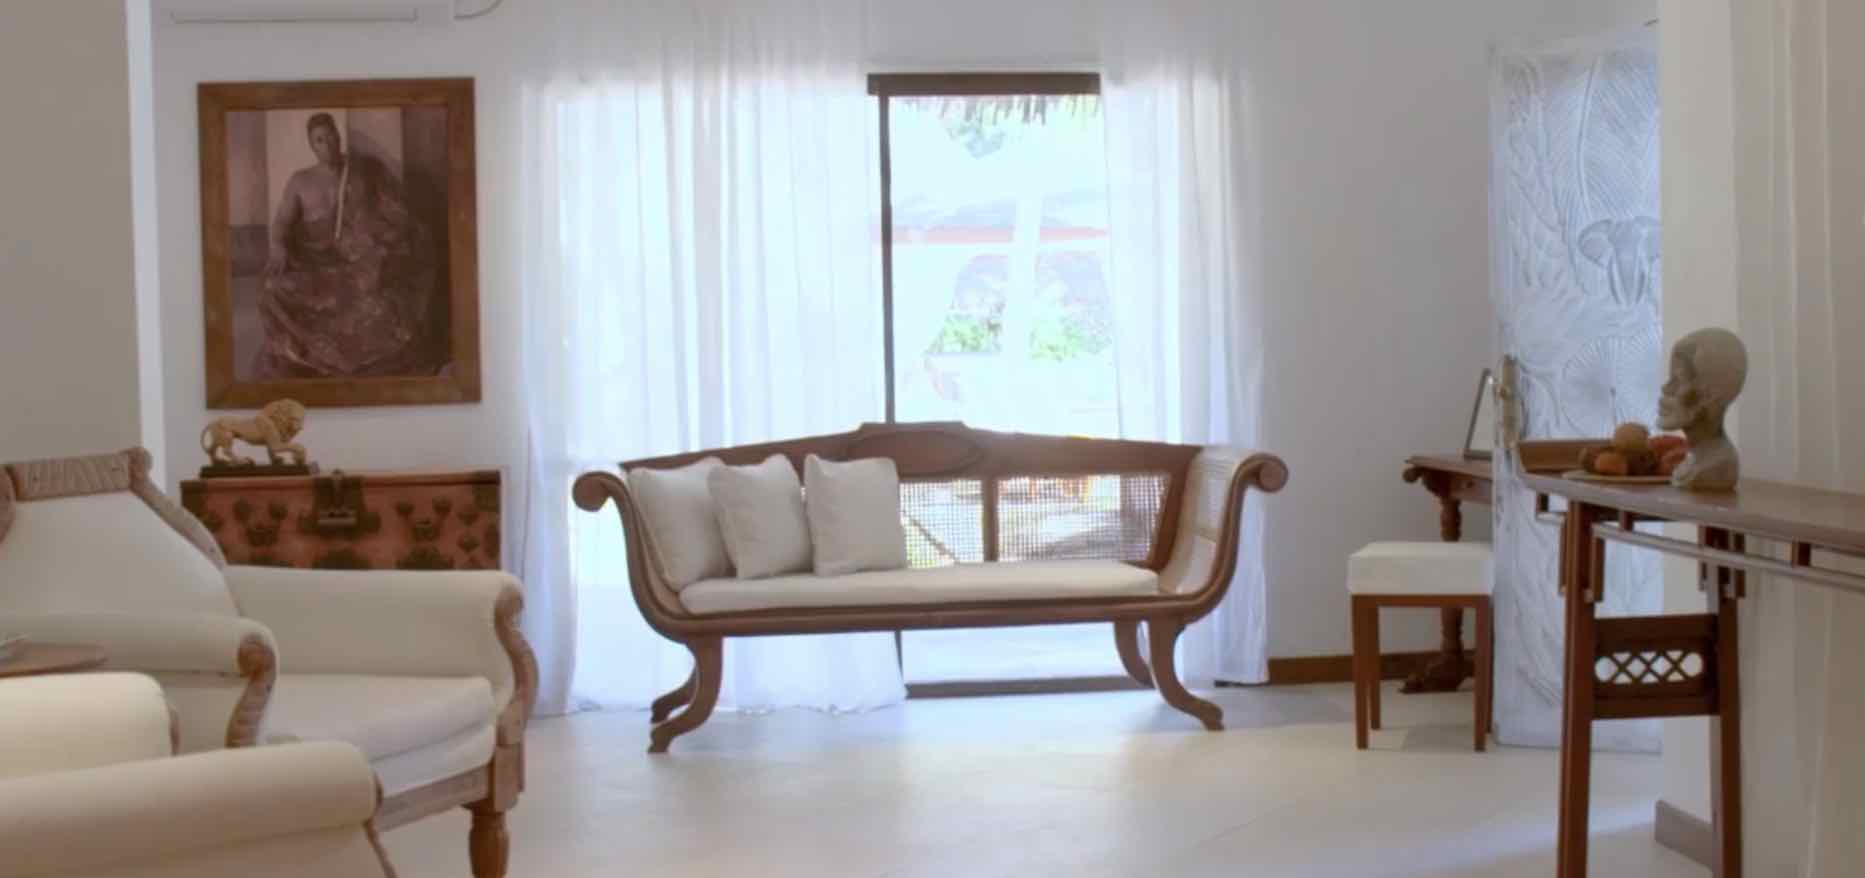 sala de estar de la casa de Naomi Campbell